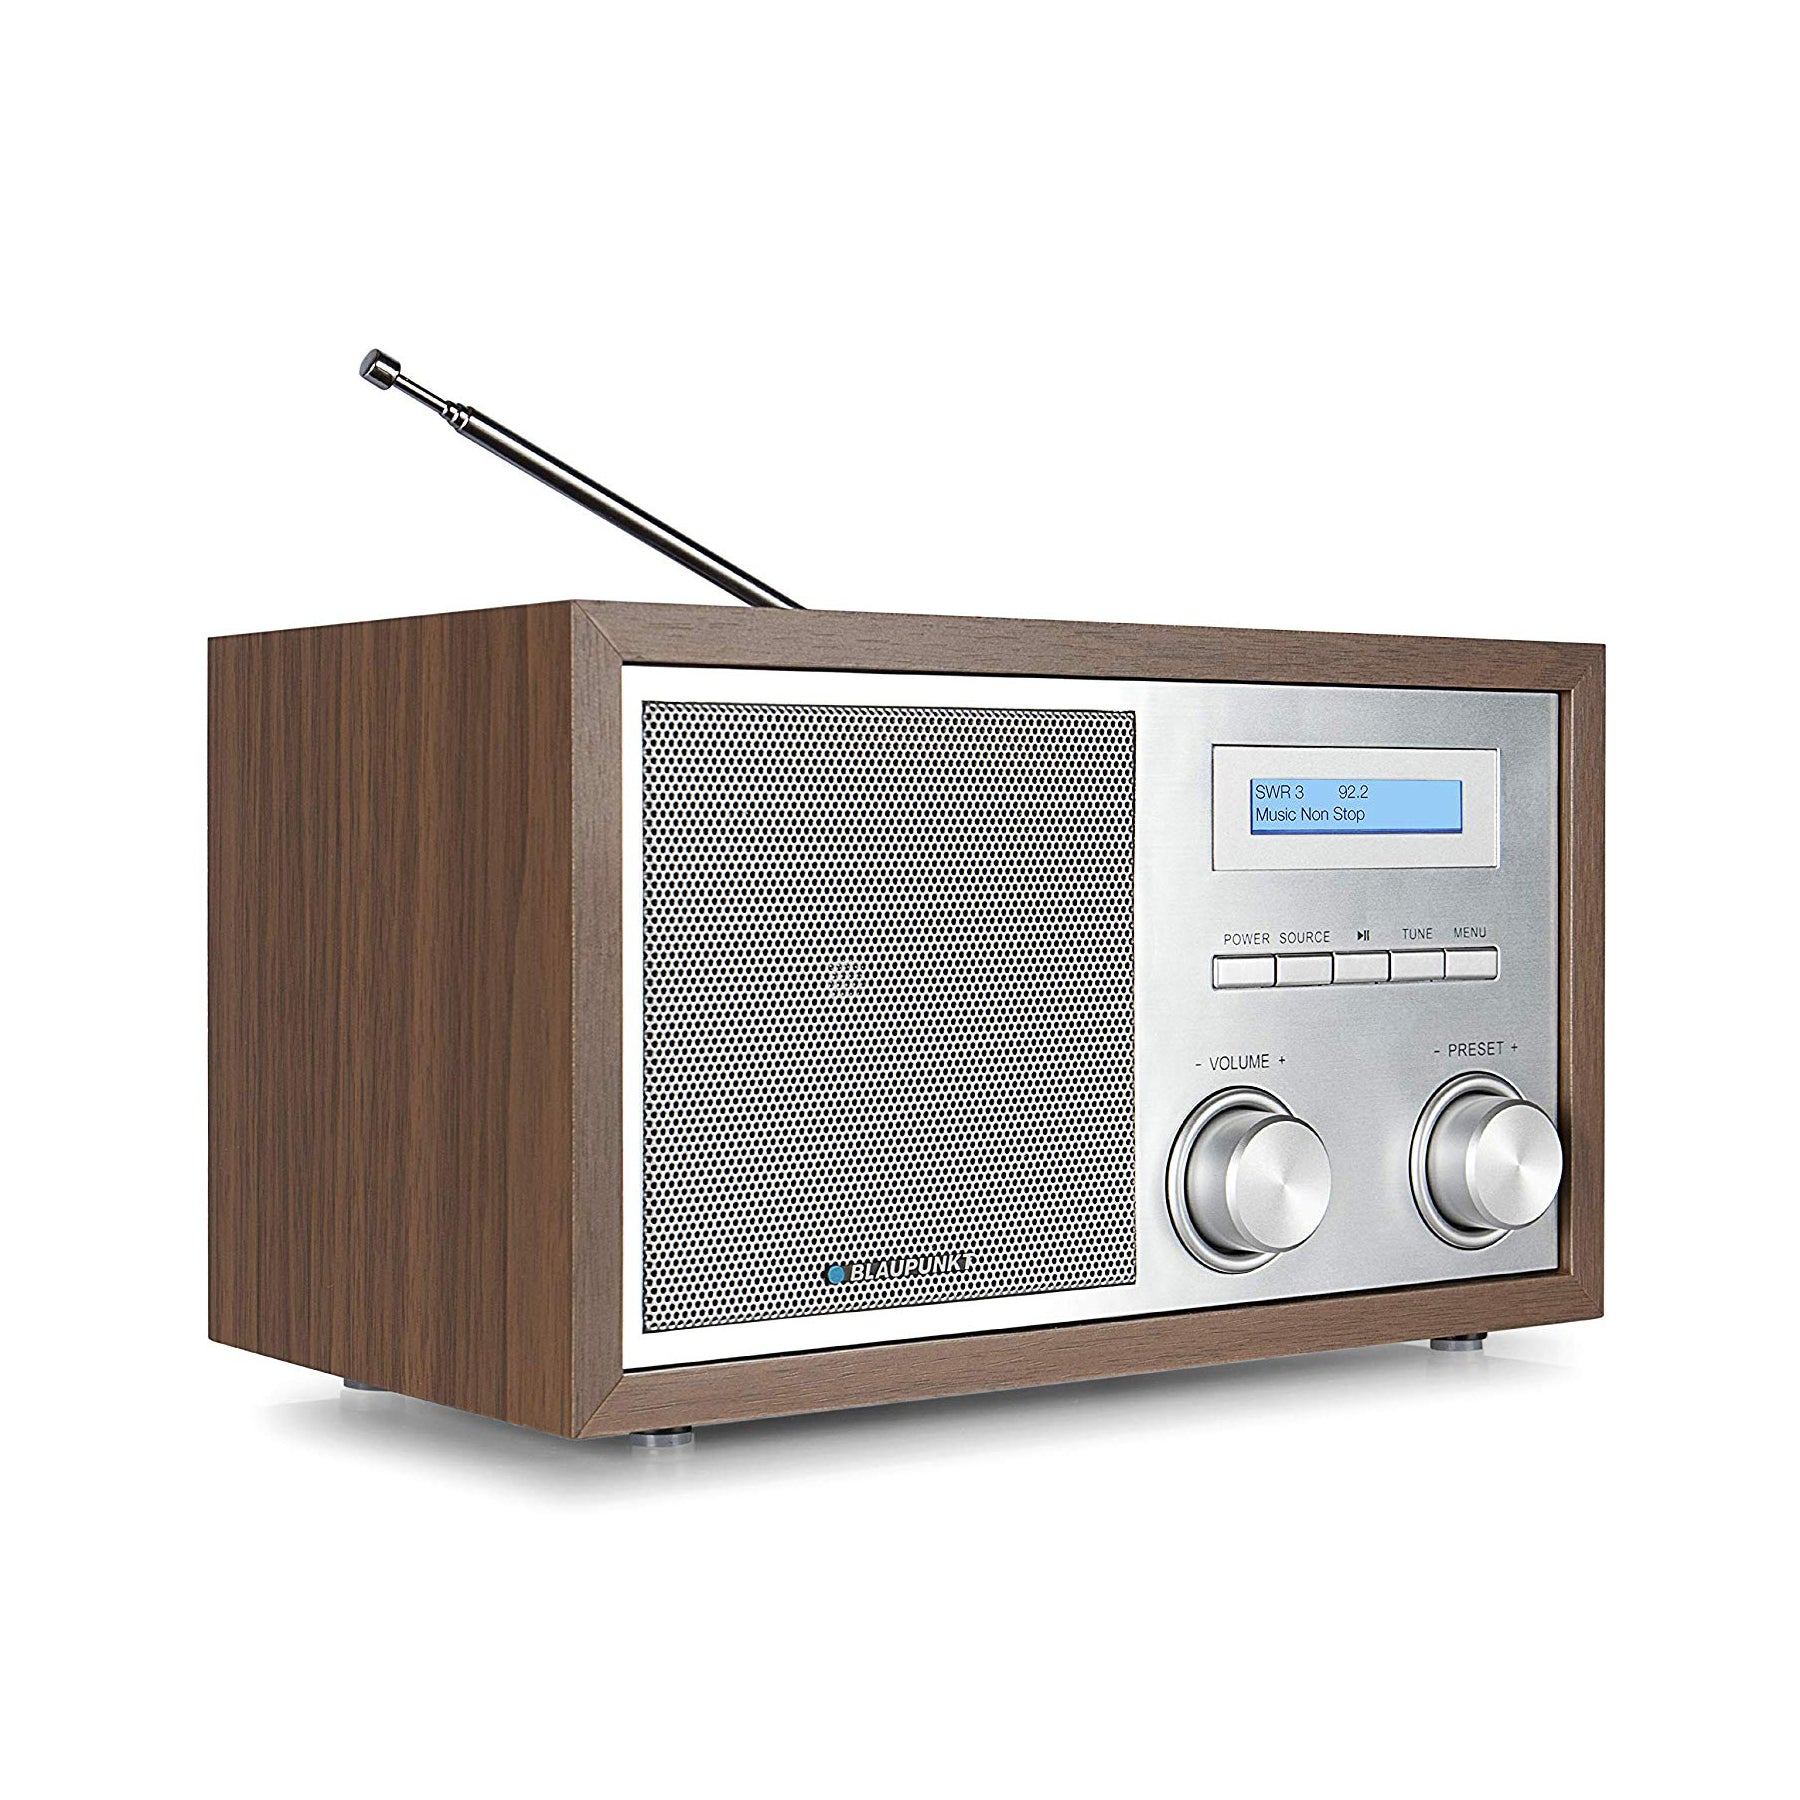 Blaupunkt RXD 180 Dab Plus Digital Radio, kleines Bluetooth Radio, Aux In, Ukw Fm Radio mit Rds, Küchenradio einfache Bedienung, Drehregler